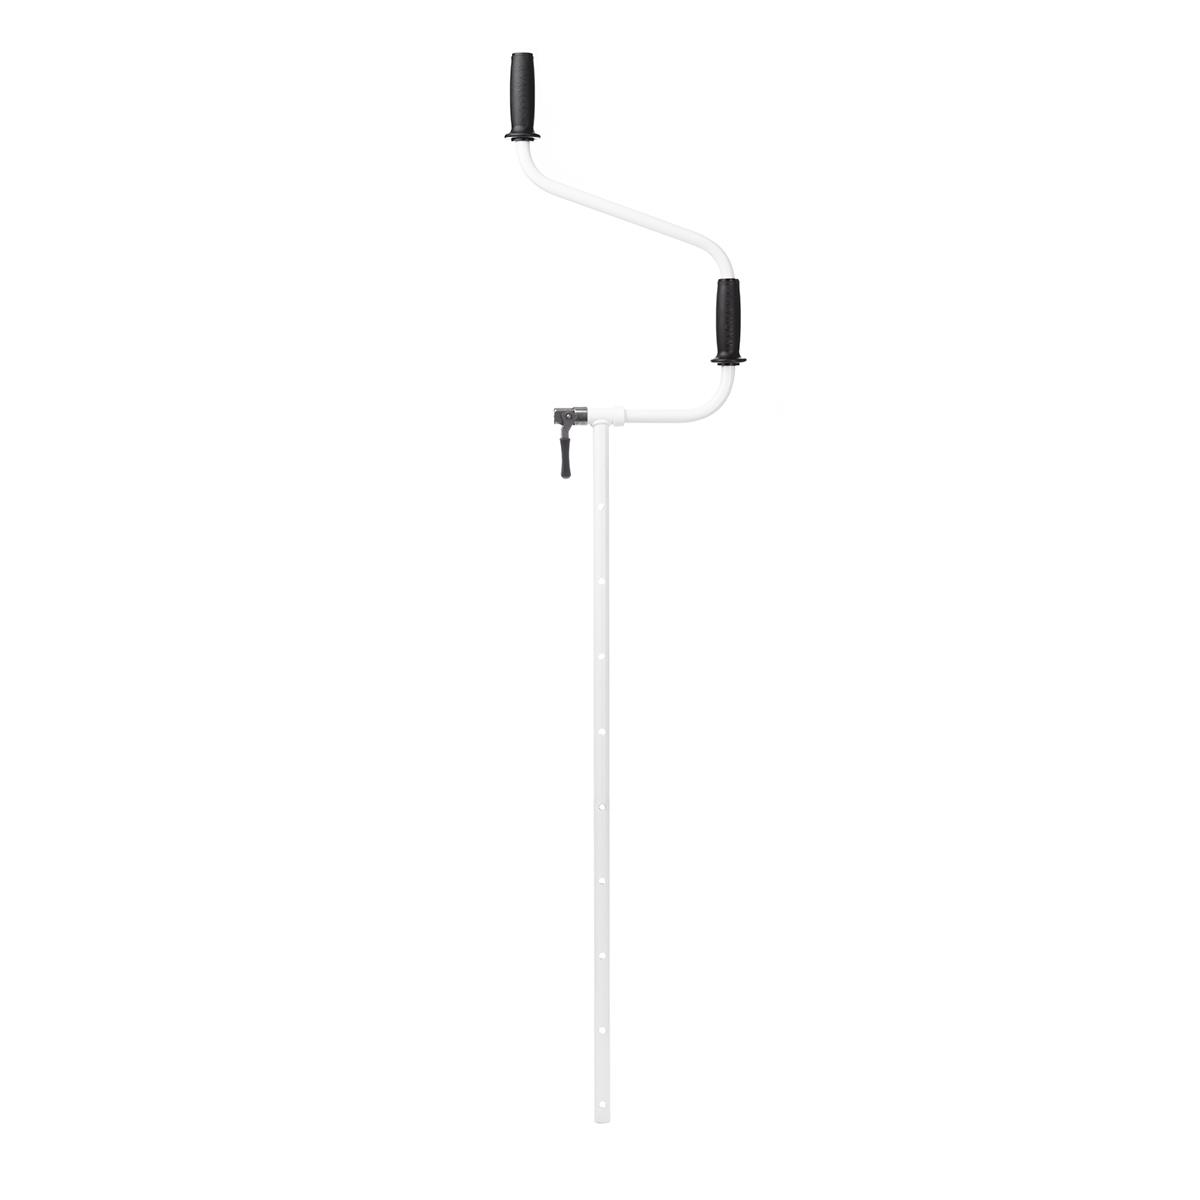 Ручка для ледобура ICEBERG-ARCTIC v2.0 Тонар тяпка посадочная длина 28 см деревянная ручка с поролоном